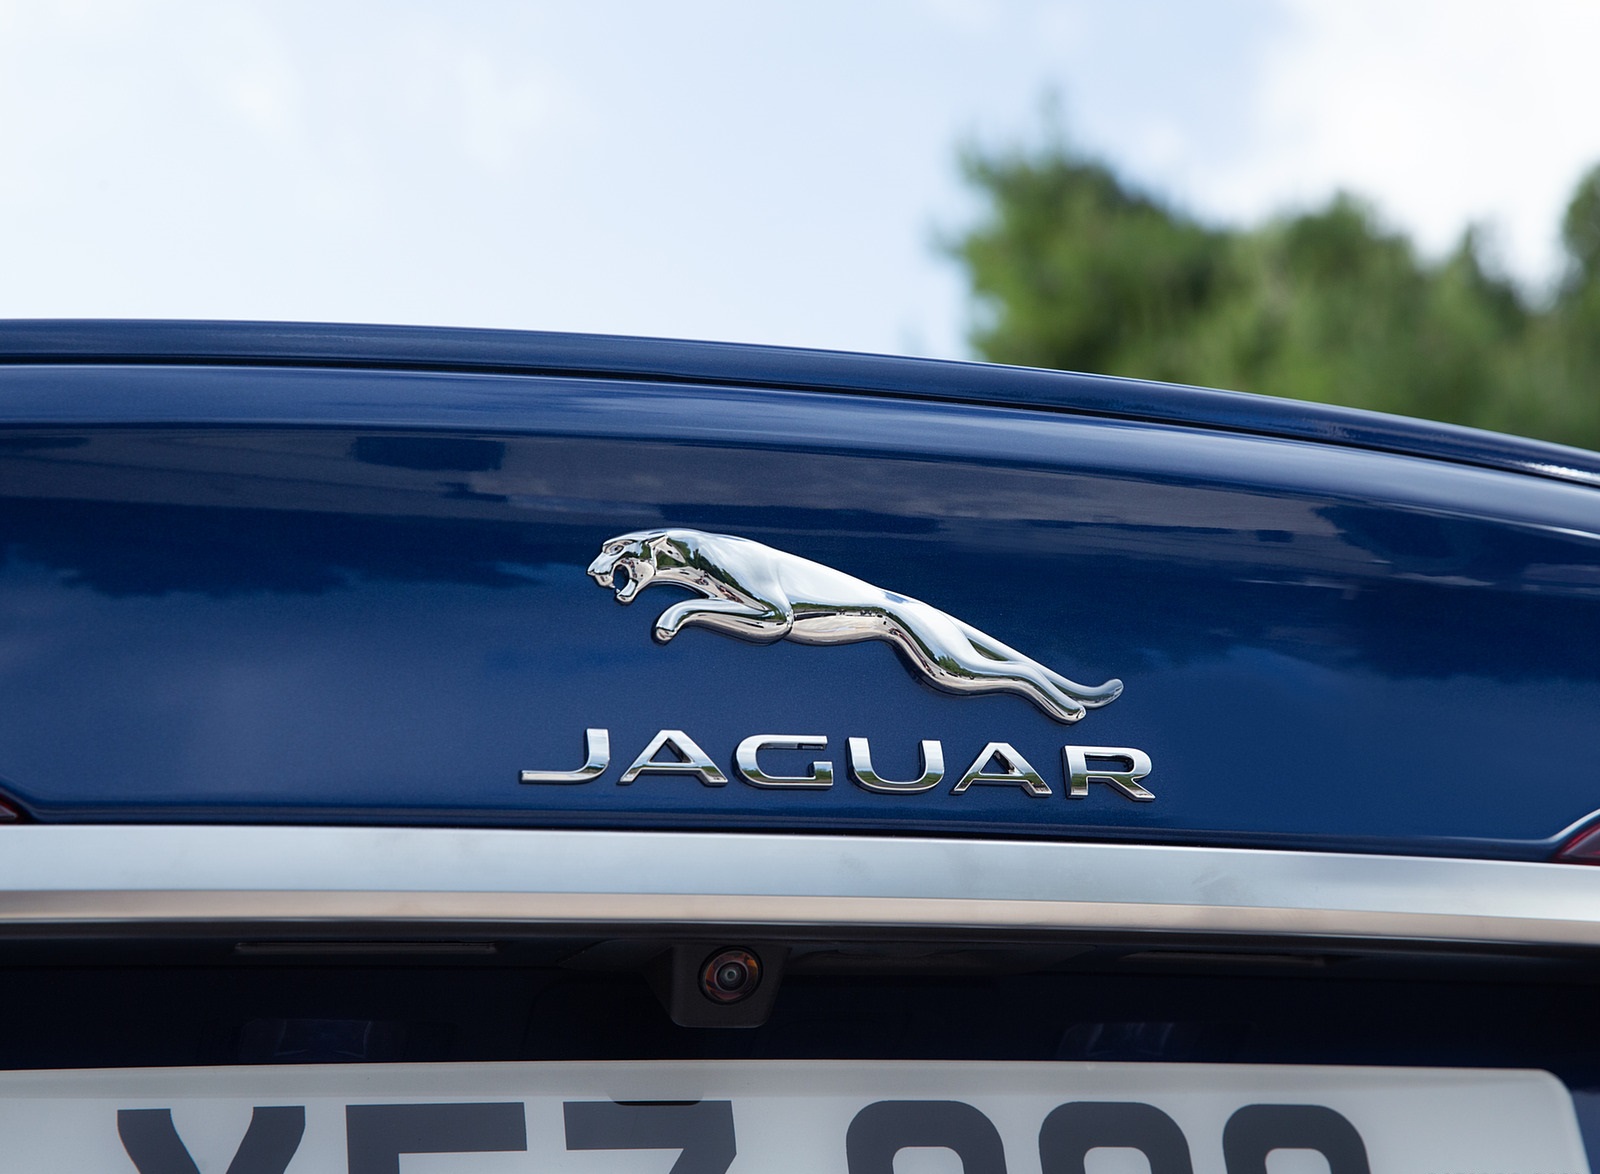 2021 Jaguar XF Badge Wallpapers #43 of 59